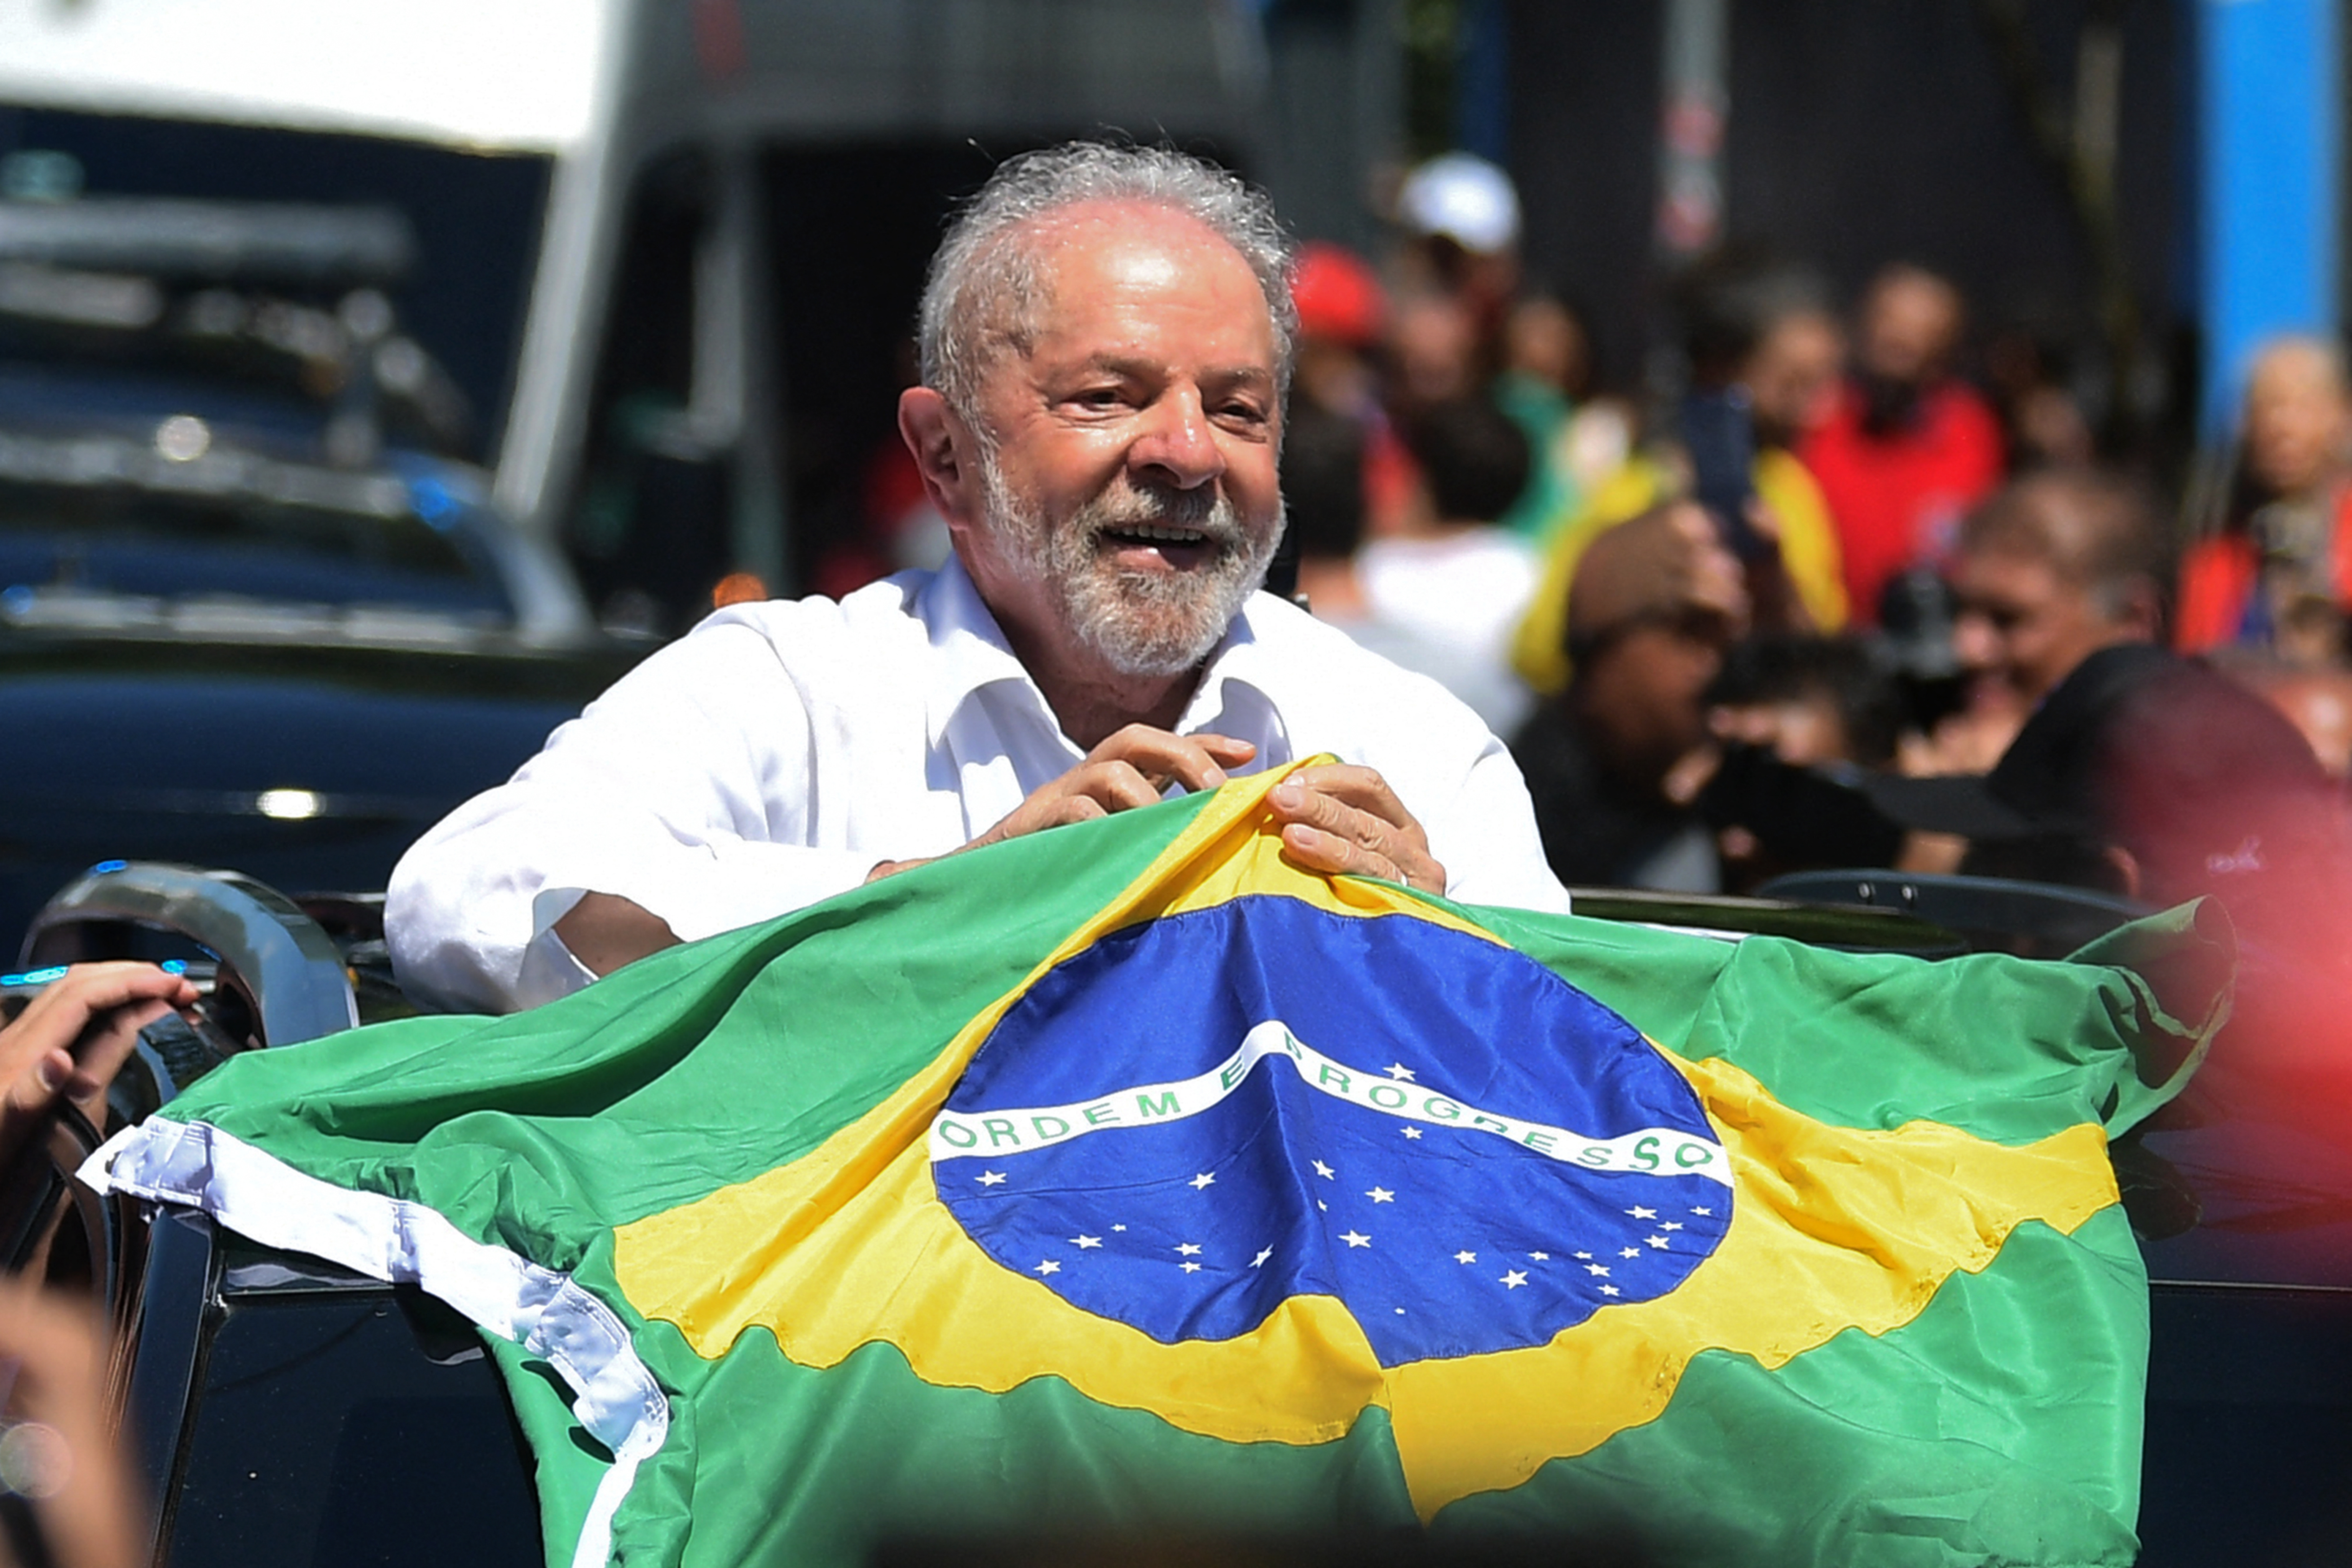 Los seguidores de Lula calientan motores para una investidura “histórica”